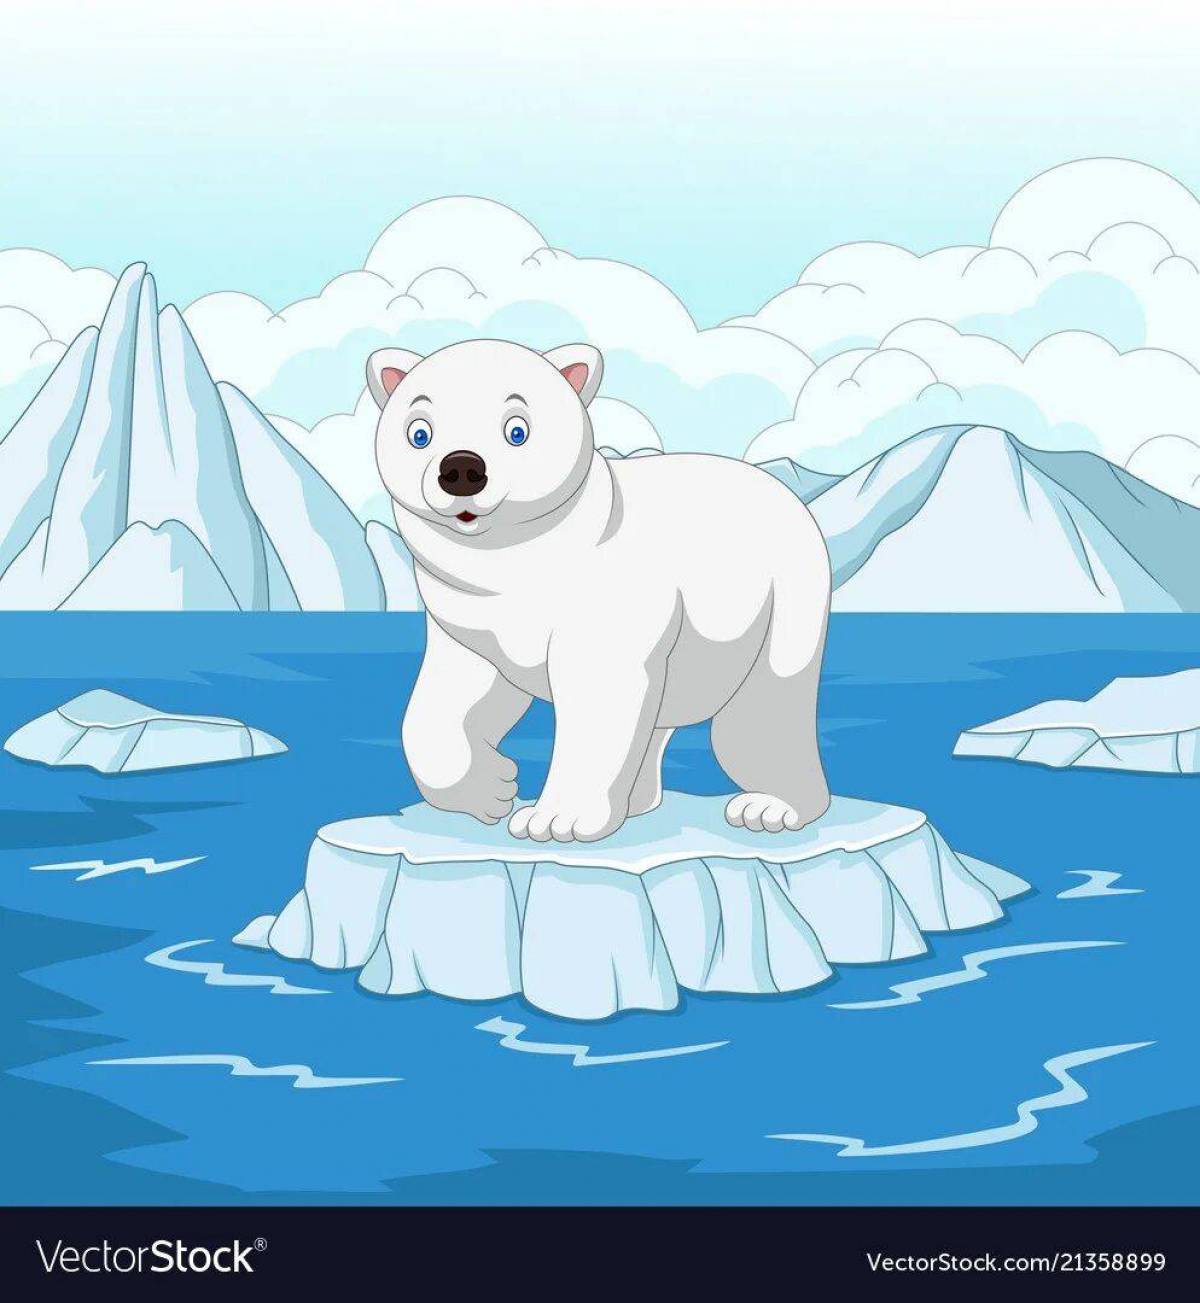 Белый медведь для детей на льдине #1